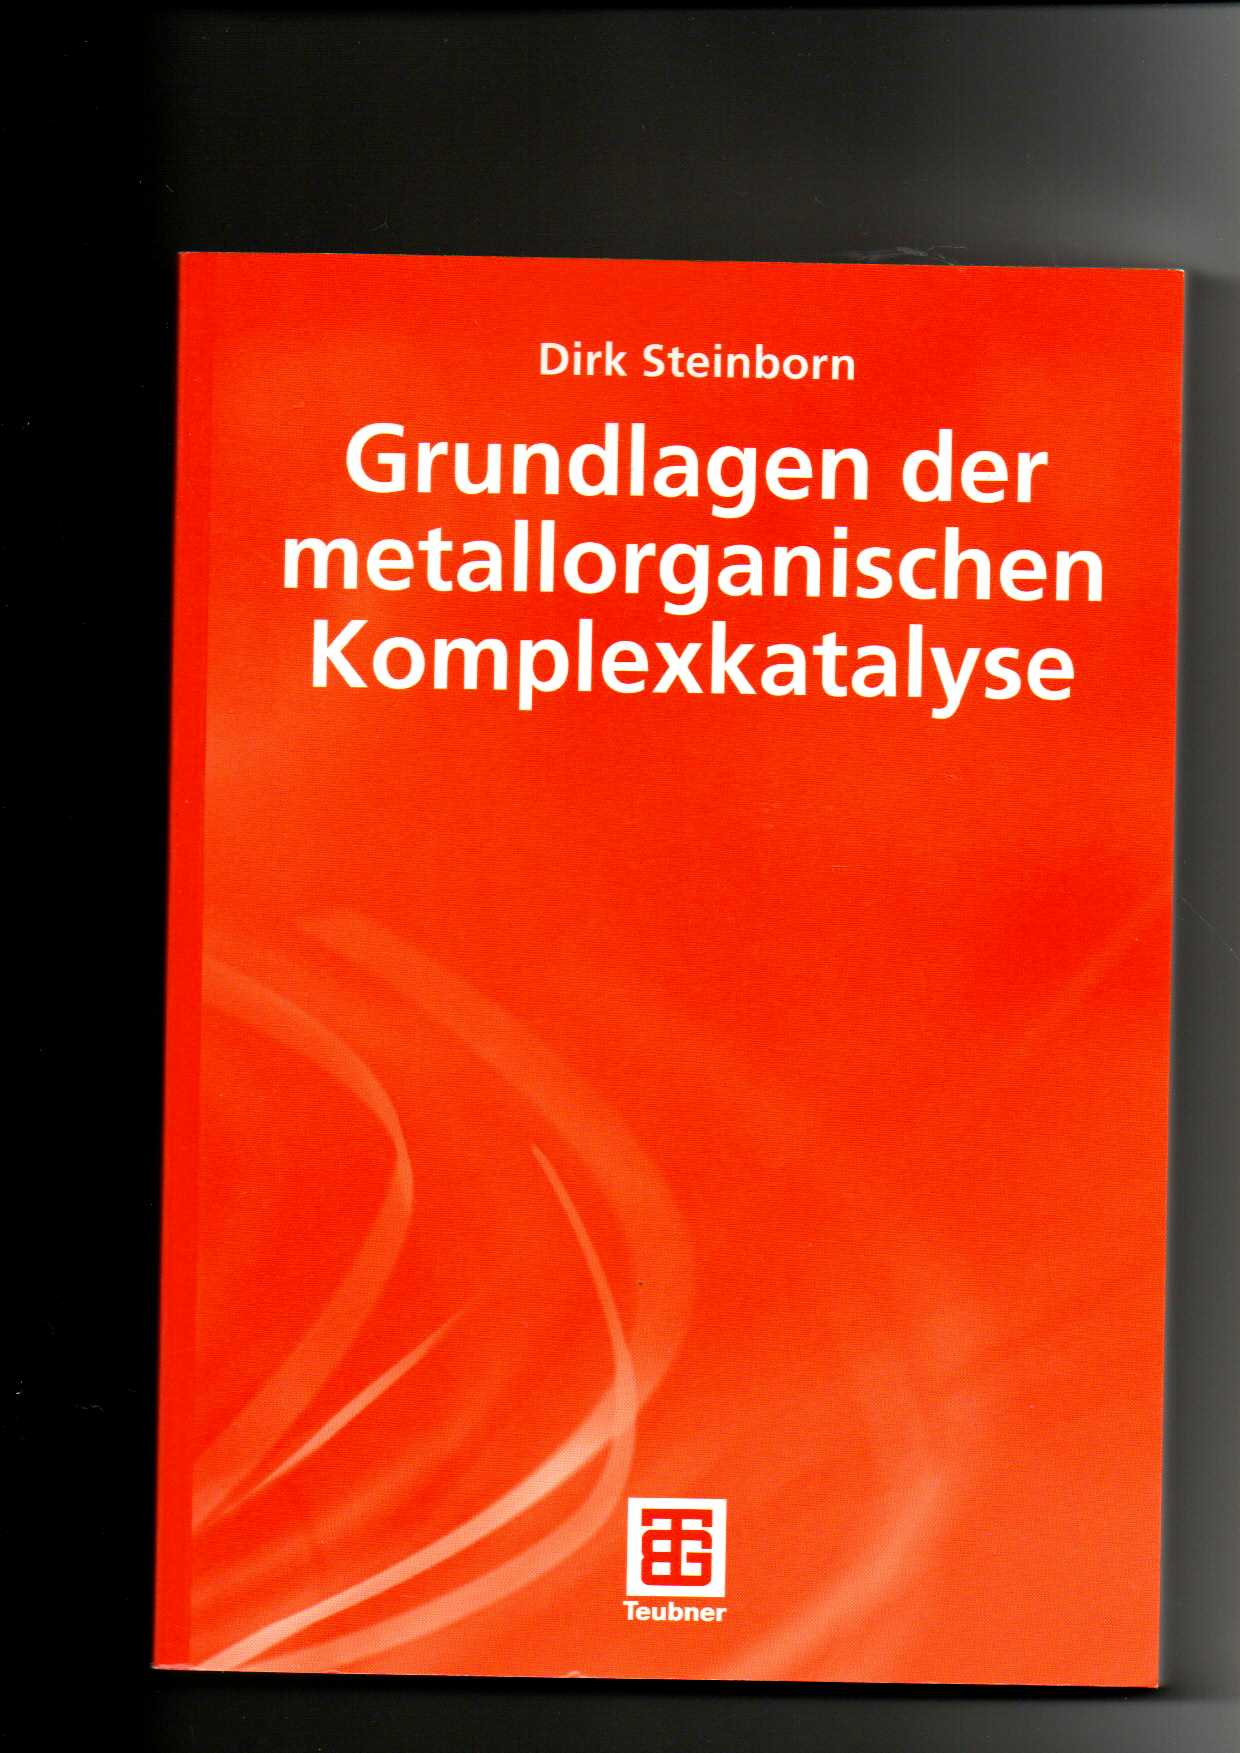 Dirk Steinborn, Grundlagen der metallorganischen Komplexkatalyse - Steinborn, Dirk